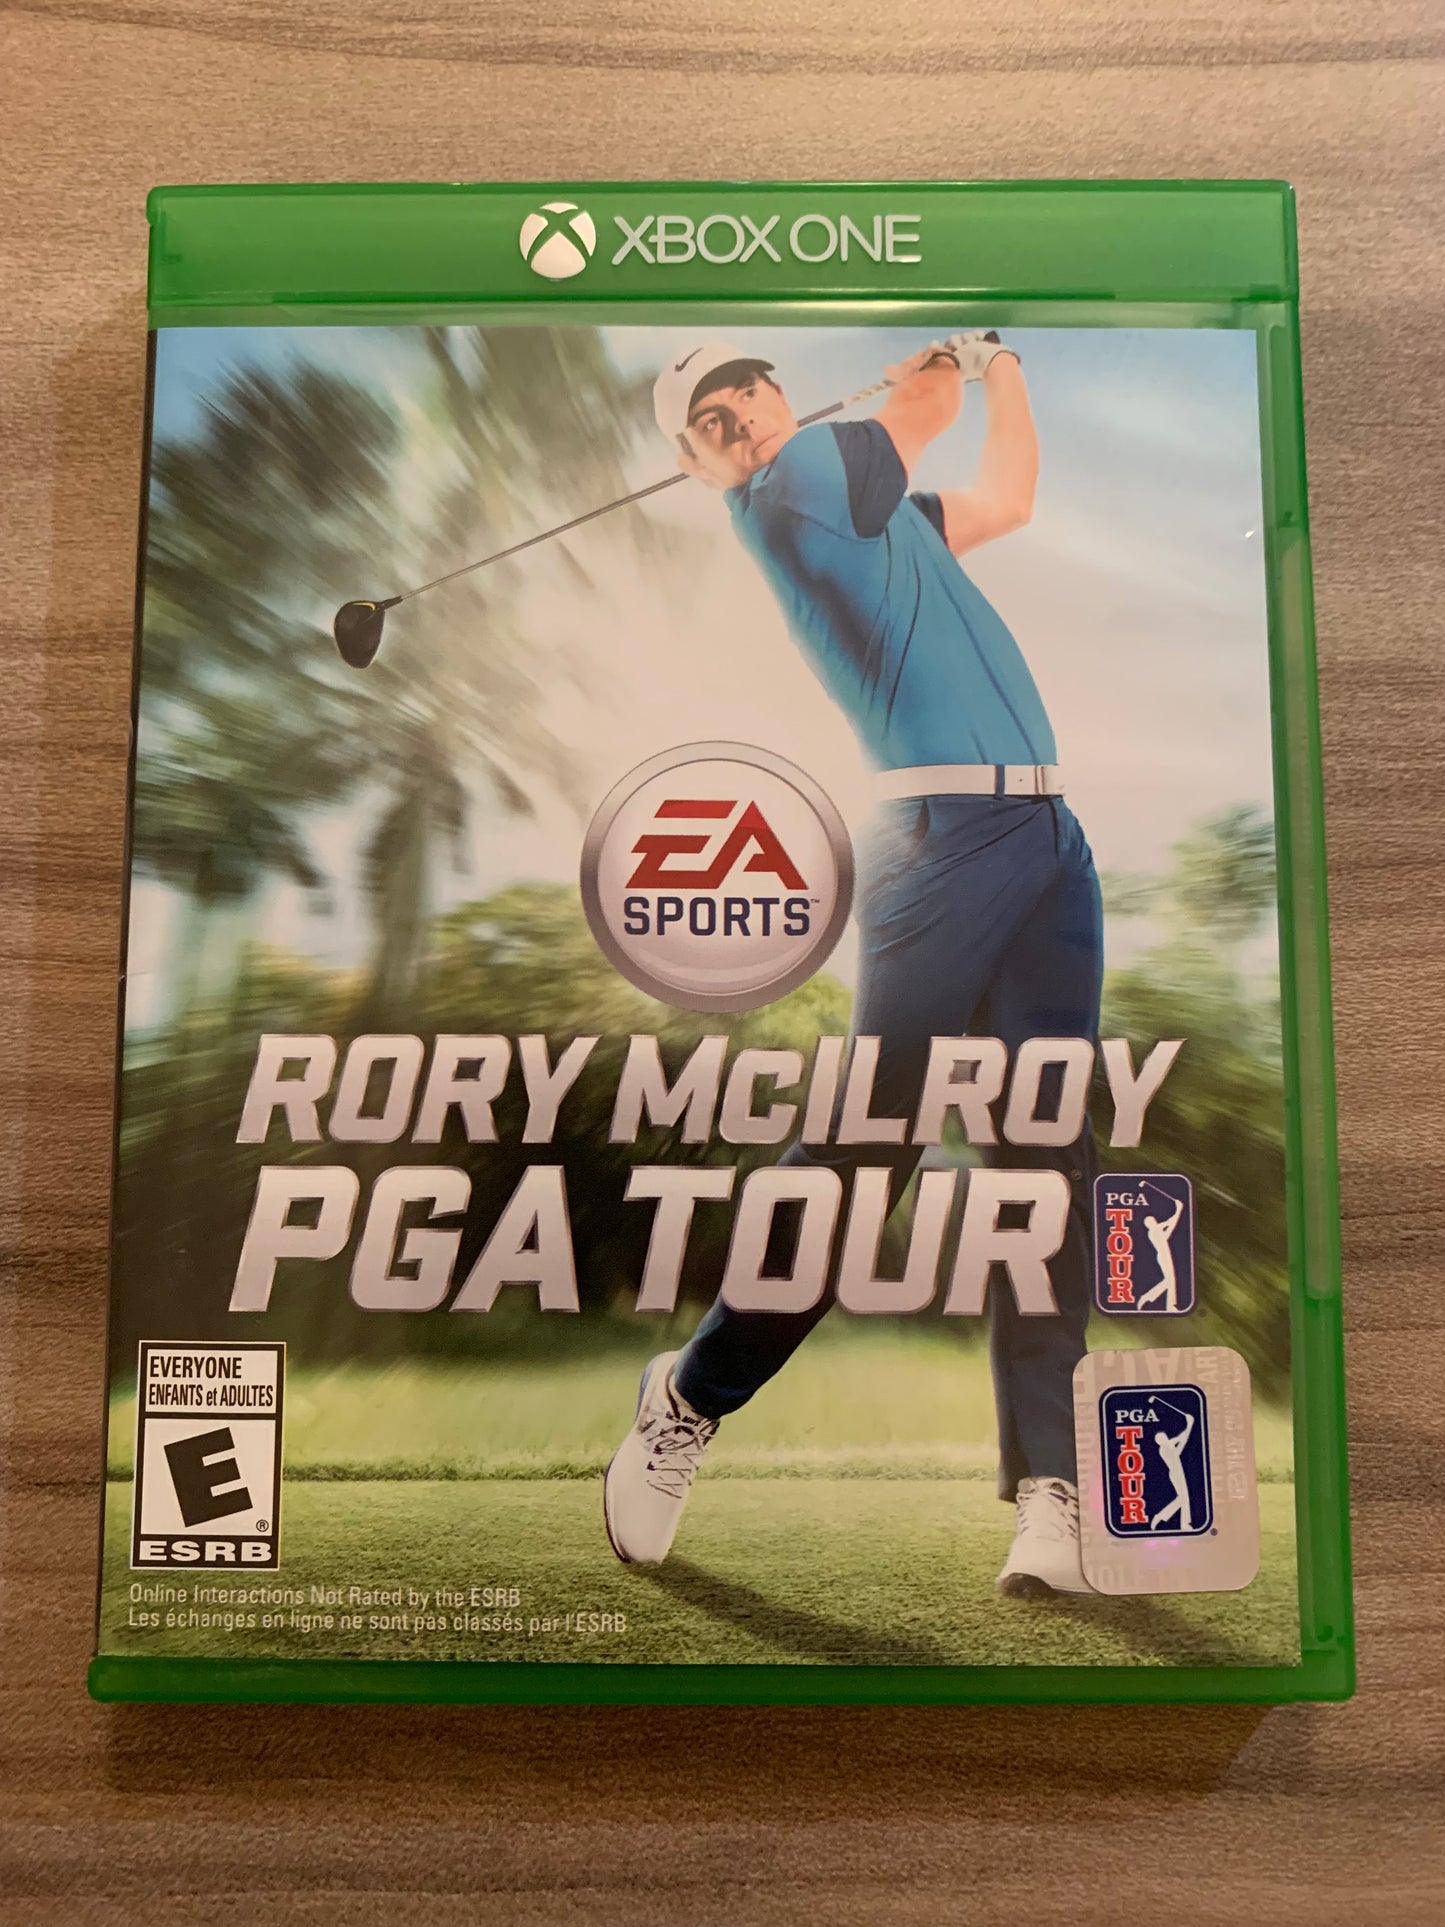 MiCROSOFT XBOX ONE | RORY MCiLROY PGA TOUR